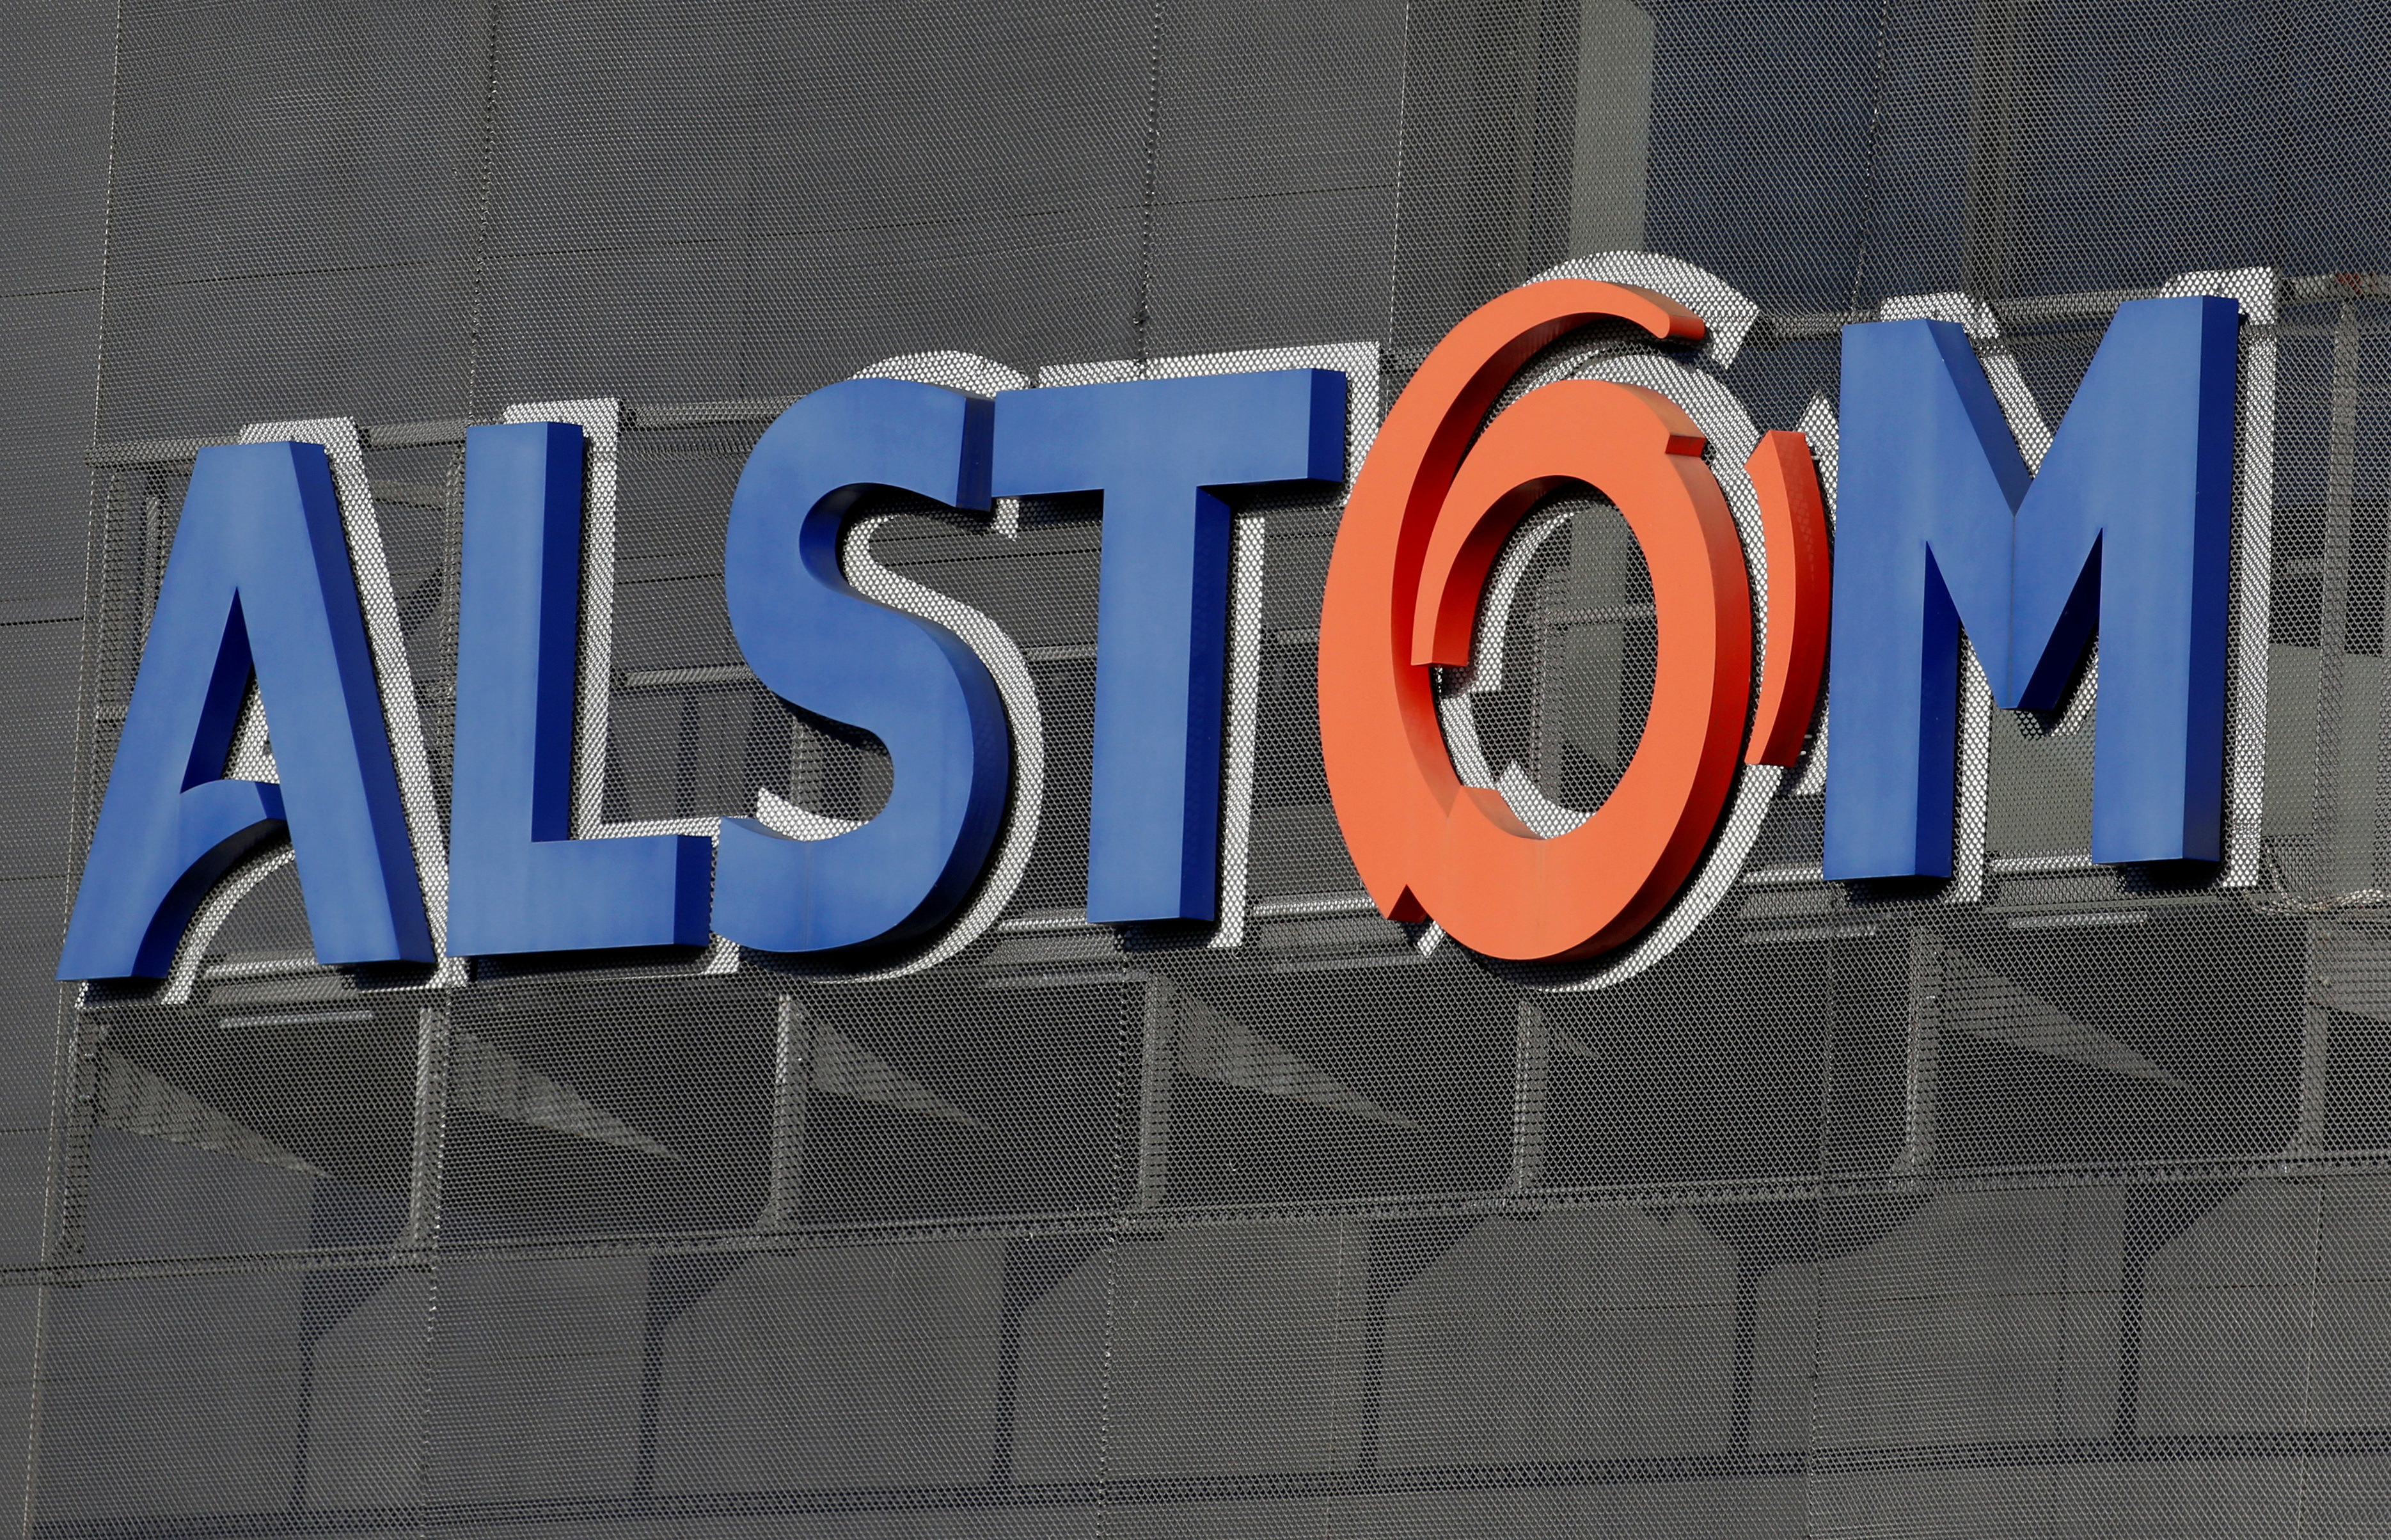 Pour tenter de réduire sa dette, Alstom supprime 1.500 emplois dans le monde